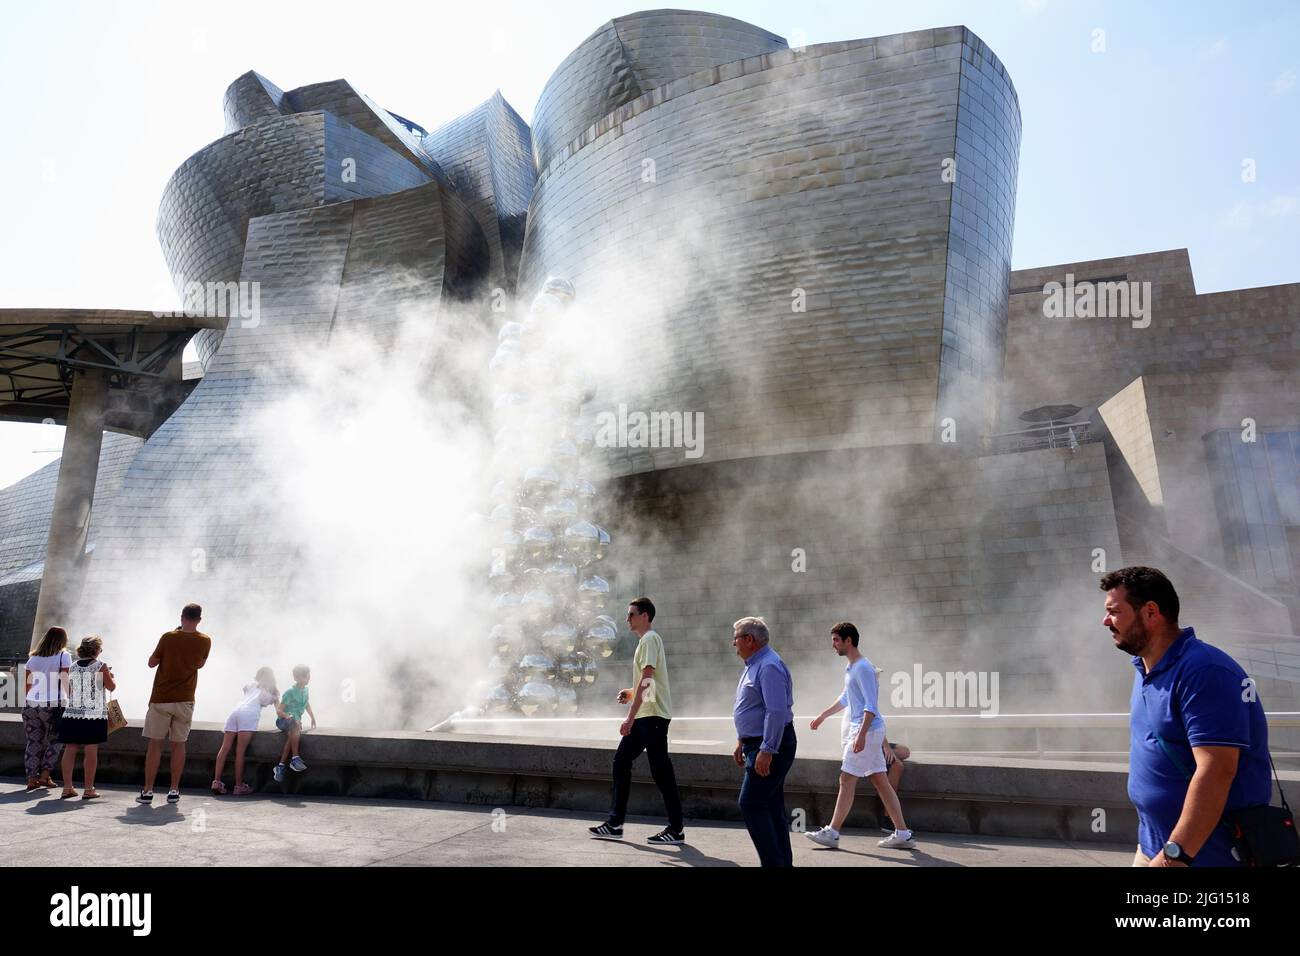 Art moderne et contemporain Musée Guggenheim, conçu par l'architecte Frank Gehry. Bilbao, Espagne - août 2018 Banque D'Images